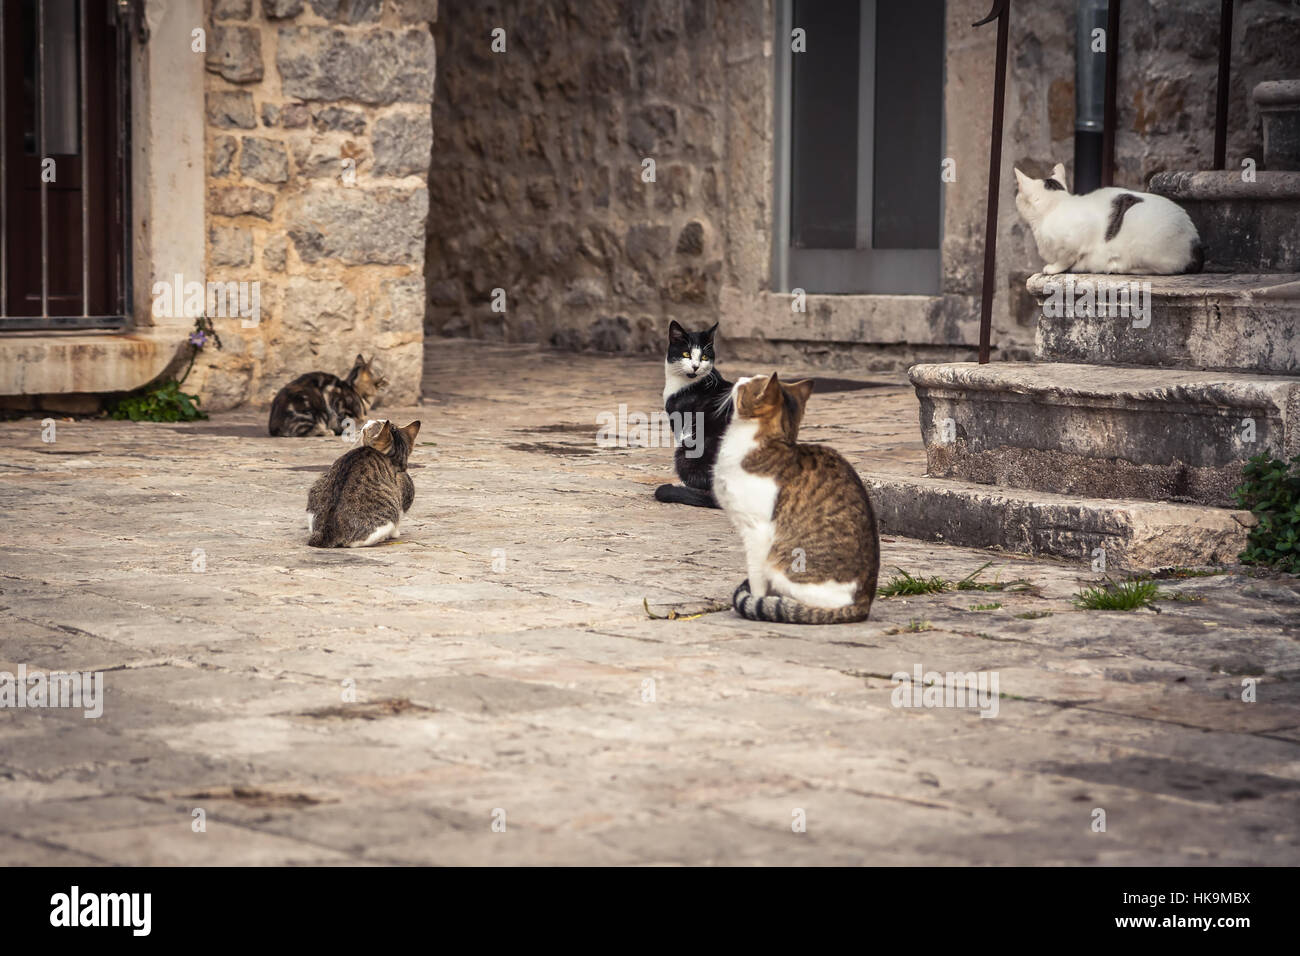 Giocoso gatti in attesa di cibo in Europa vecchia strada di città in stile vintage Foto Stock